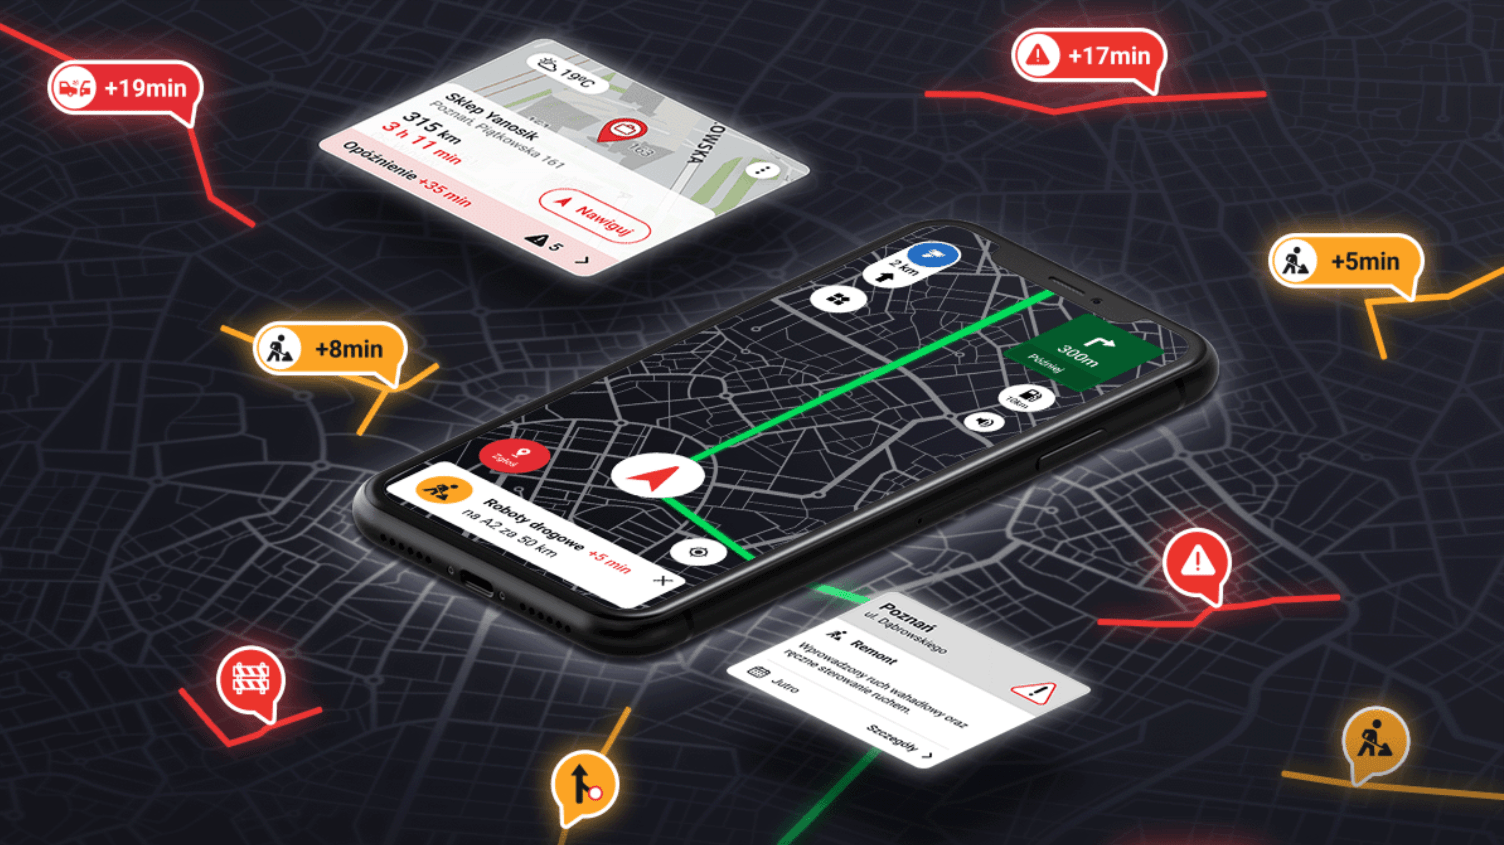 Ilustracja przedstawiająca smartfon z otwartą aplikacją nawigacji GPS, która wyświetla mapę z zaznaczonymi opóźnieniami w ruchu drogowym i komunikatem miejskim, otoczona dodatkowymi kartami informacyjnymi z czasami dojazdu oraz ikonami komunikacji miejskiej i ostrzeżeń.